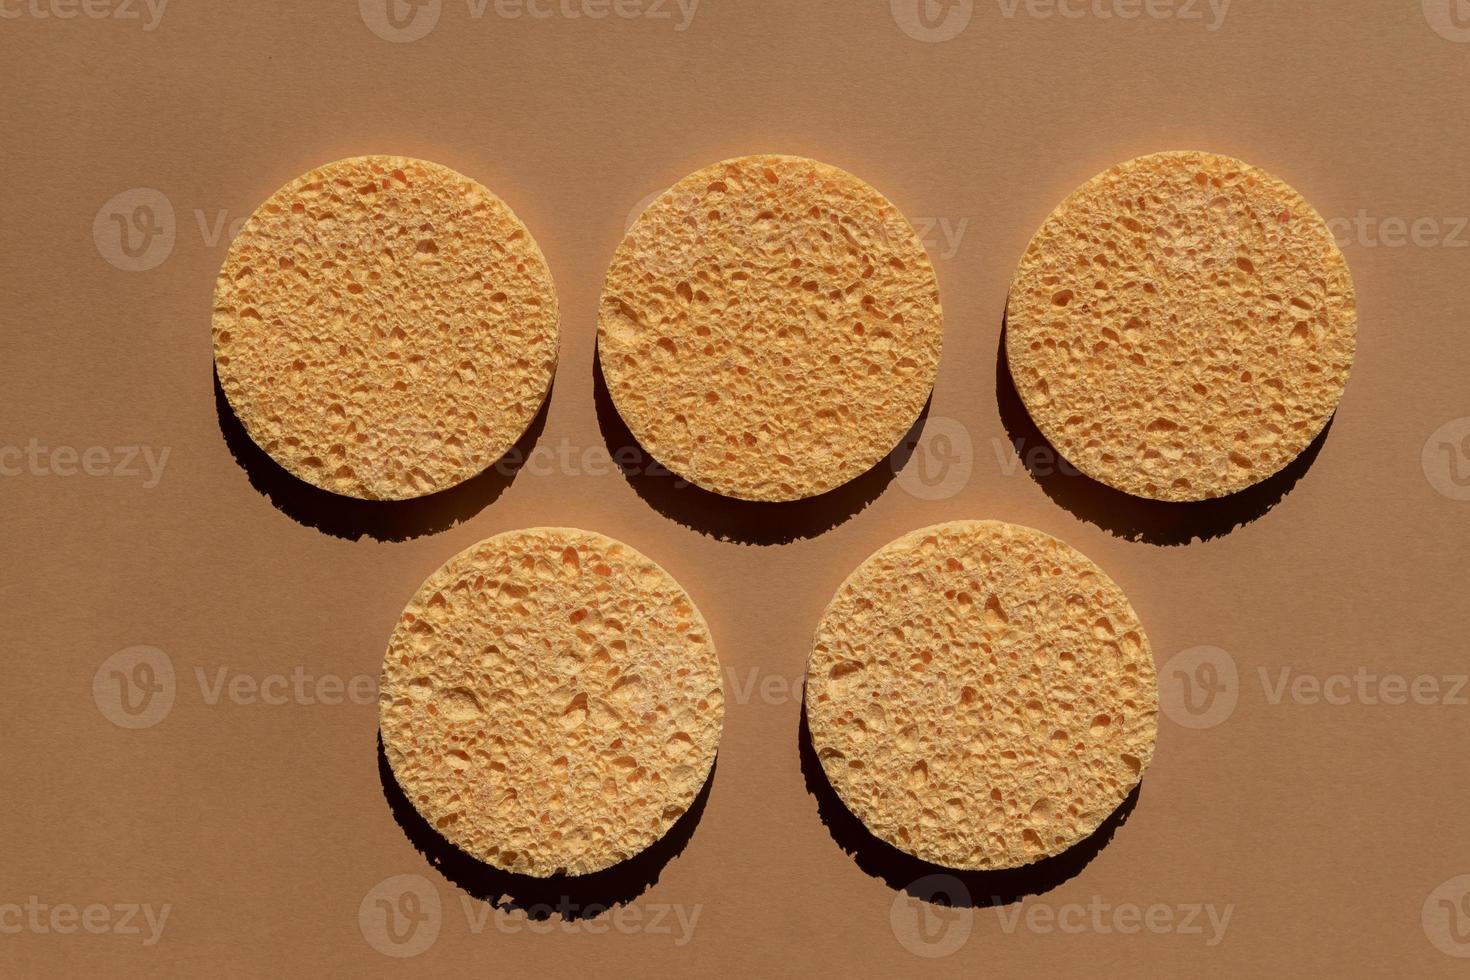 conjunto de esponjas de celulosa redondas naturales para limpieza facial y eliminación de maquillaje sobre fondo marrón foto